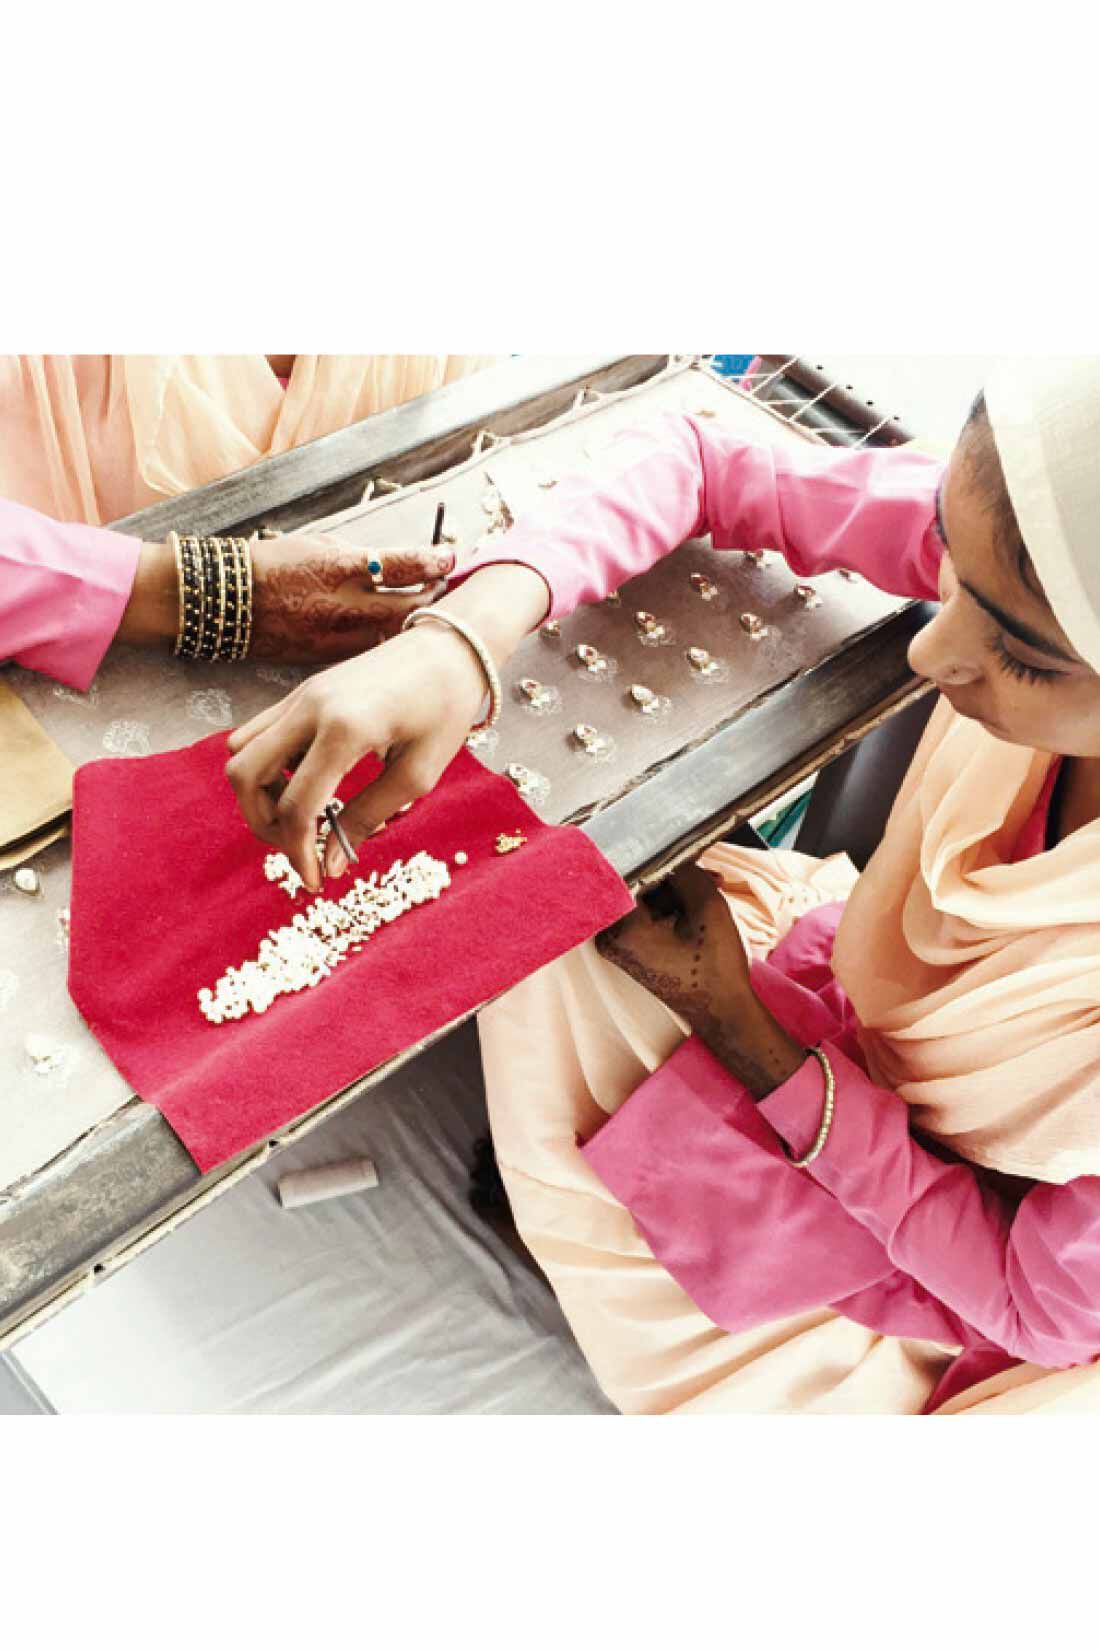 IEDIT|Her smileプロジェクト IEDIT[イディット]　Made in India 2-WAY仕様のタッセルが揺れる 繊細なビーズ刺しゅうが美しいイヤアクセサリー|インドの女性を応援するアクセサリーブランド MAYGLOBE by Tribaluxe[メイグローブ バイ トライバラクス] インドの伝統と日本のトレンドを取り入れたデザインのアクセサリー。伝統を受け継いできた村々と協働し日本向けの製品をつくることで、産業の少ないインドの田舎町の生活水準の向上や、現地の女性たちの生活水準の向上にも貢献しています。→https://feli.jp/s/hersmile/2/